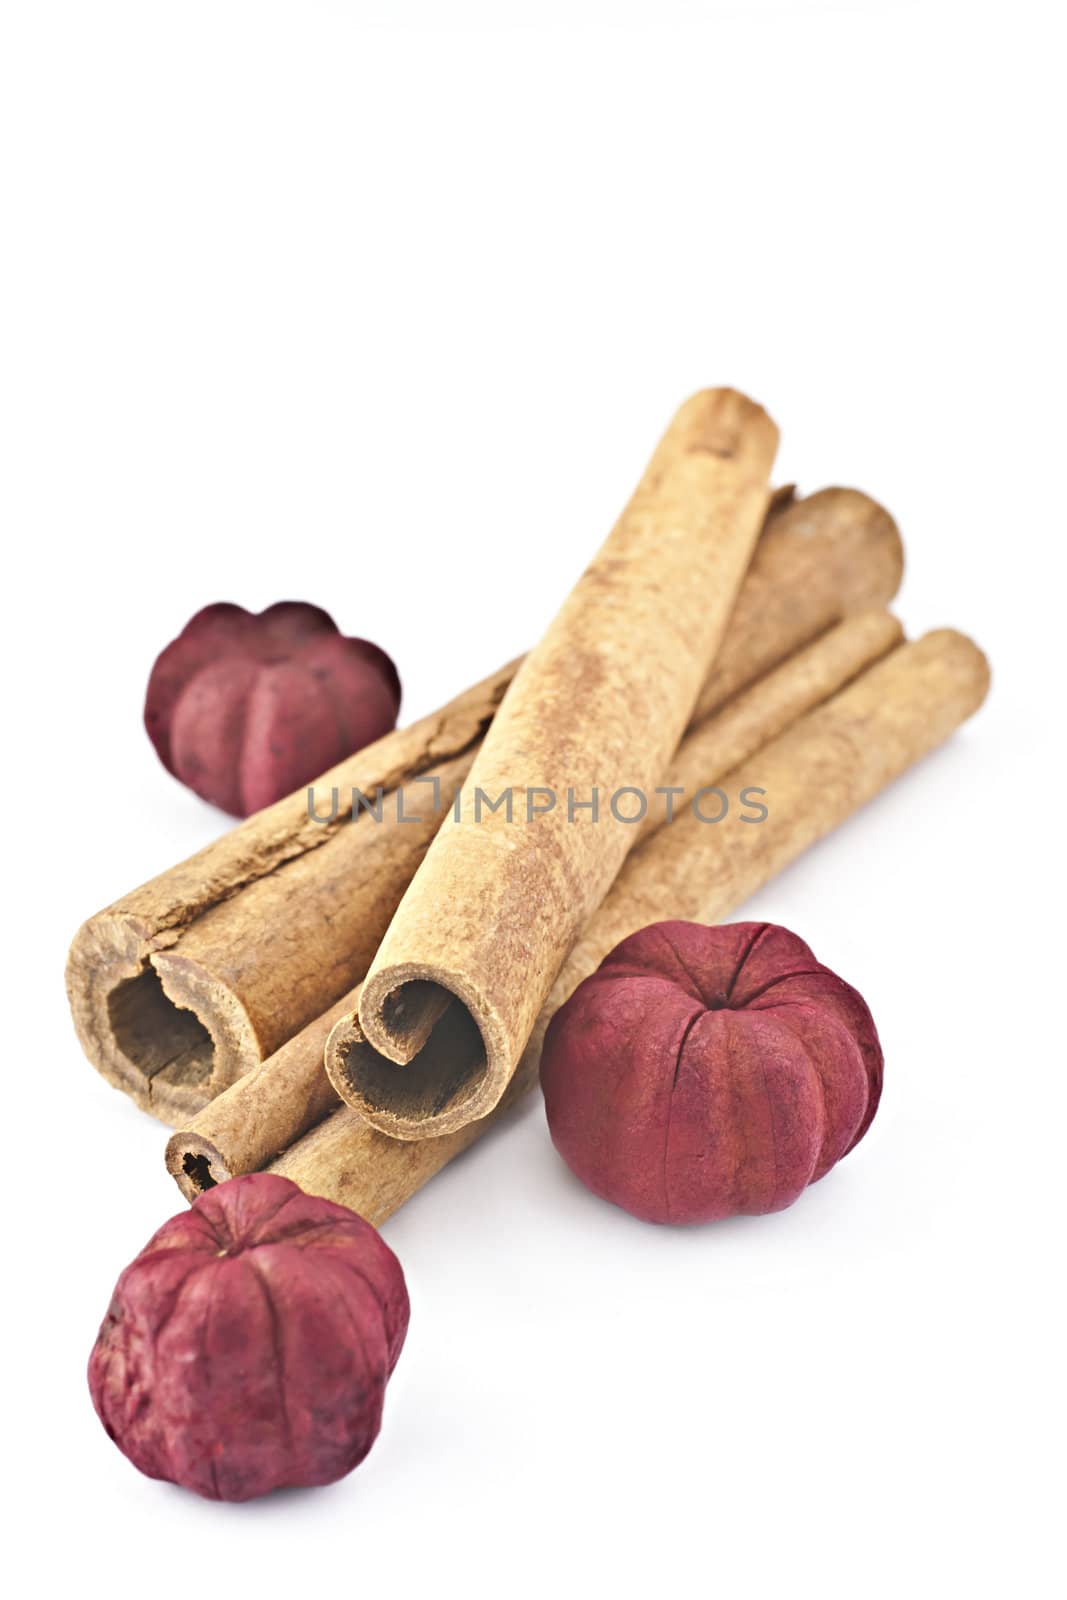 Cinnamon sticks with dried red ziediņiemu on a white background.
